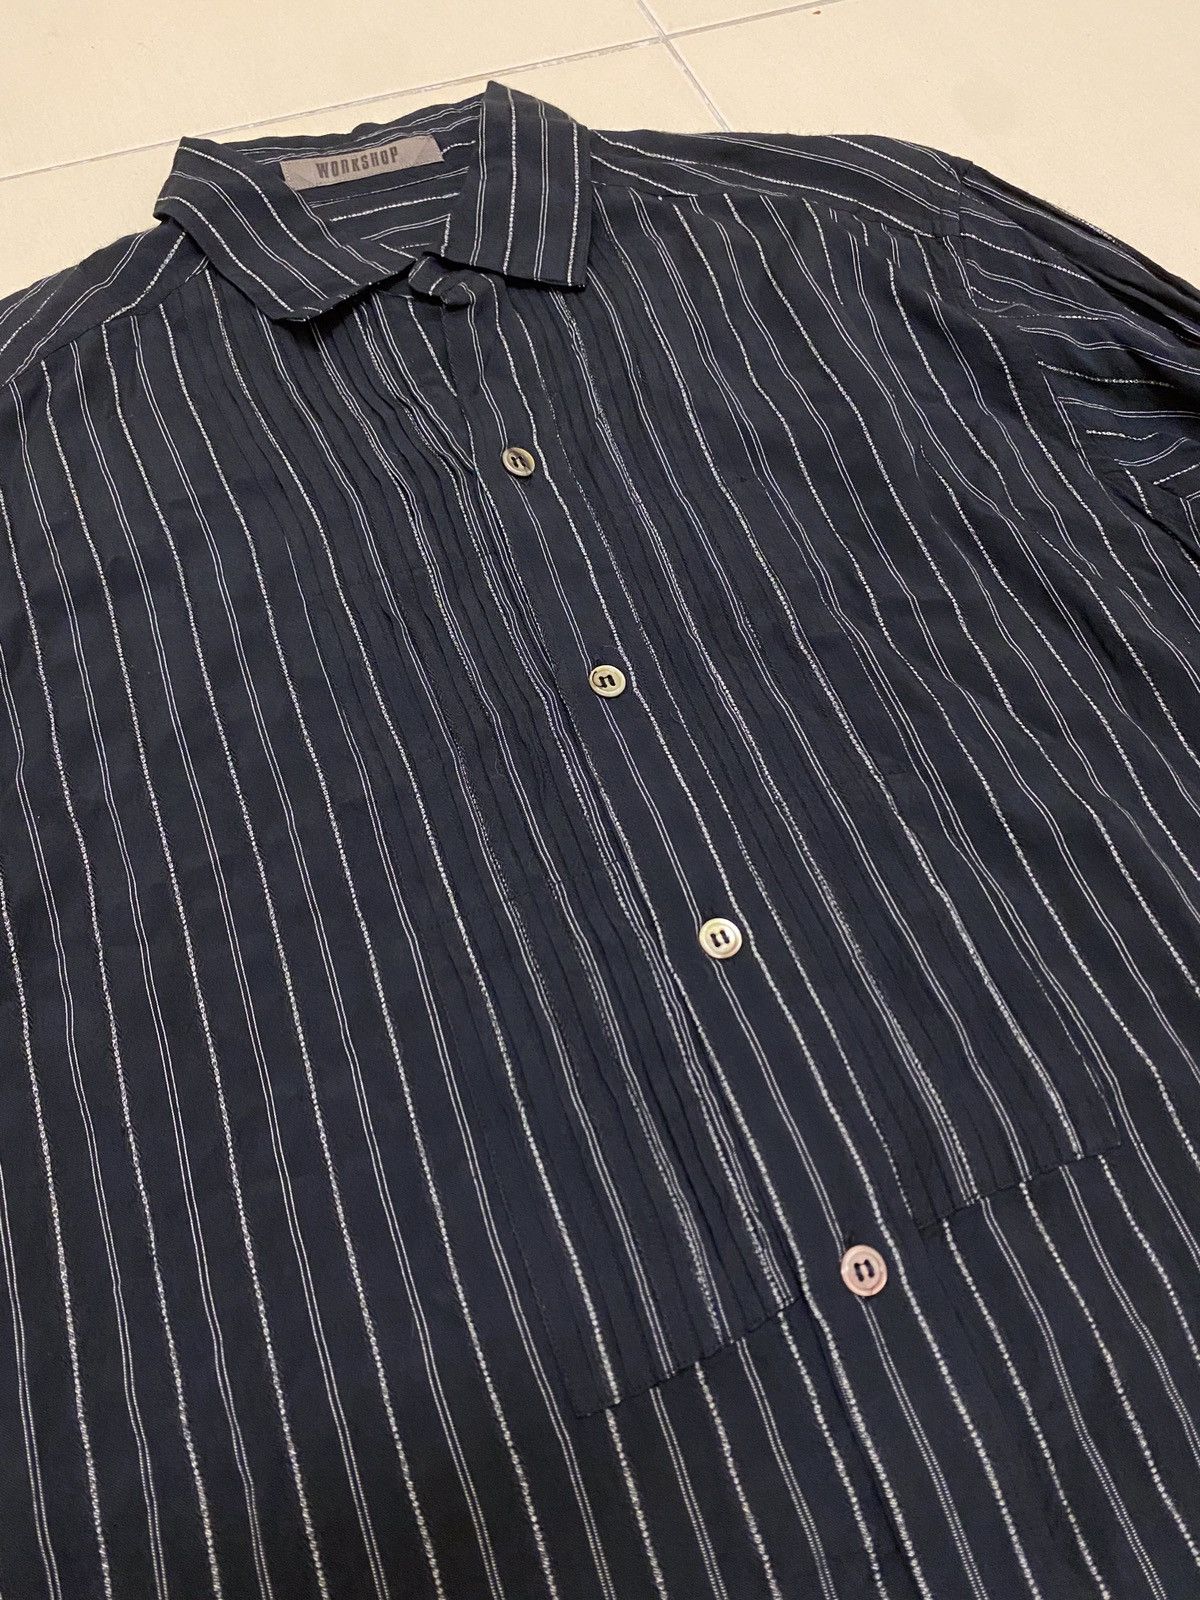 Yohji yamamoto workshop pleats chest rayon long shirt - 6